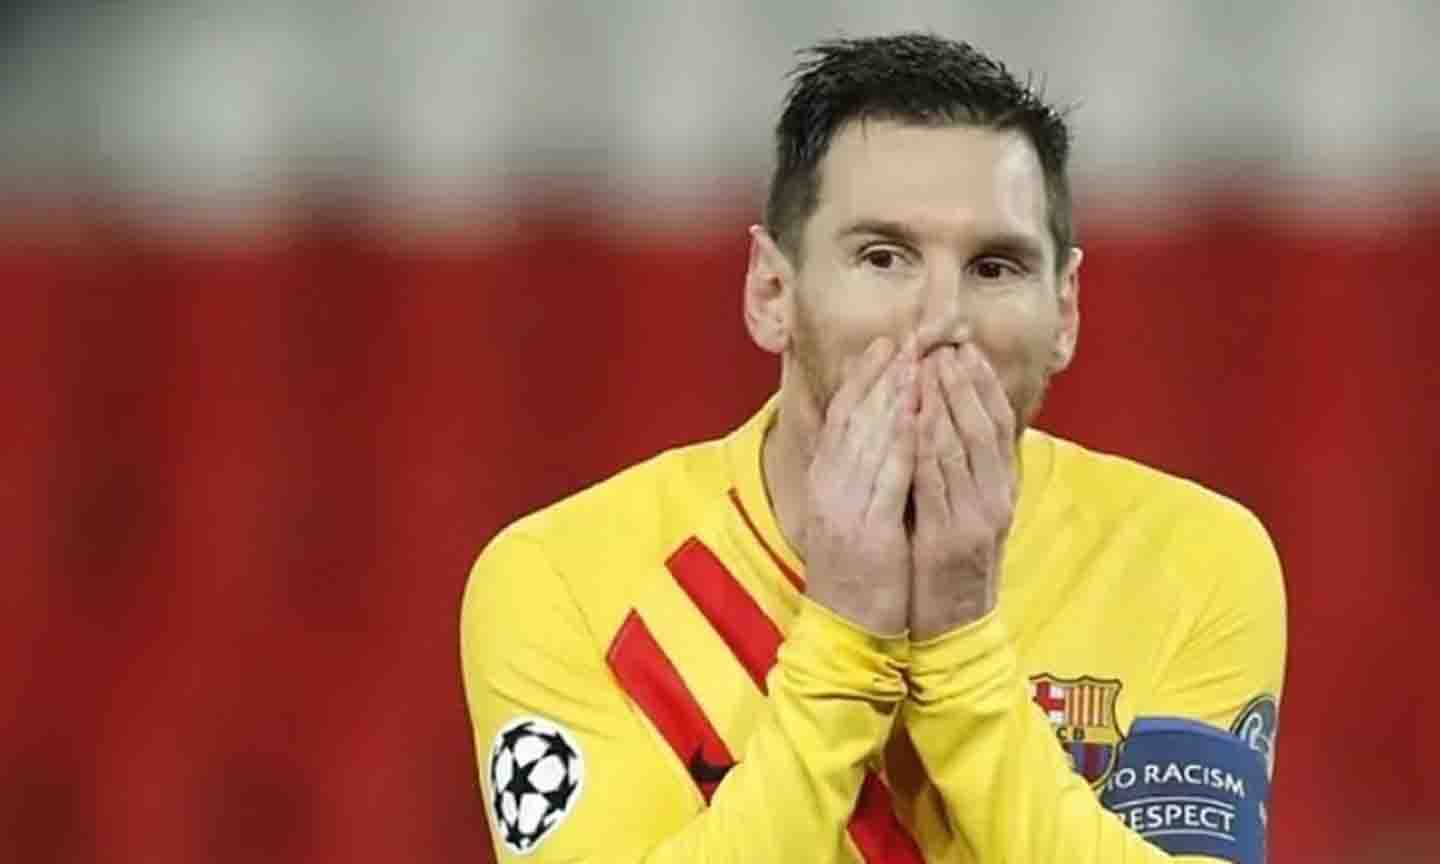 Messi cùng với Pique, Busquets là những “mảnh ghép” còn sót lại của Barcelona thời hoàng kim với những Xavi, Iniesta, Puyol…